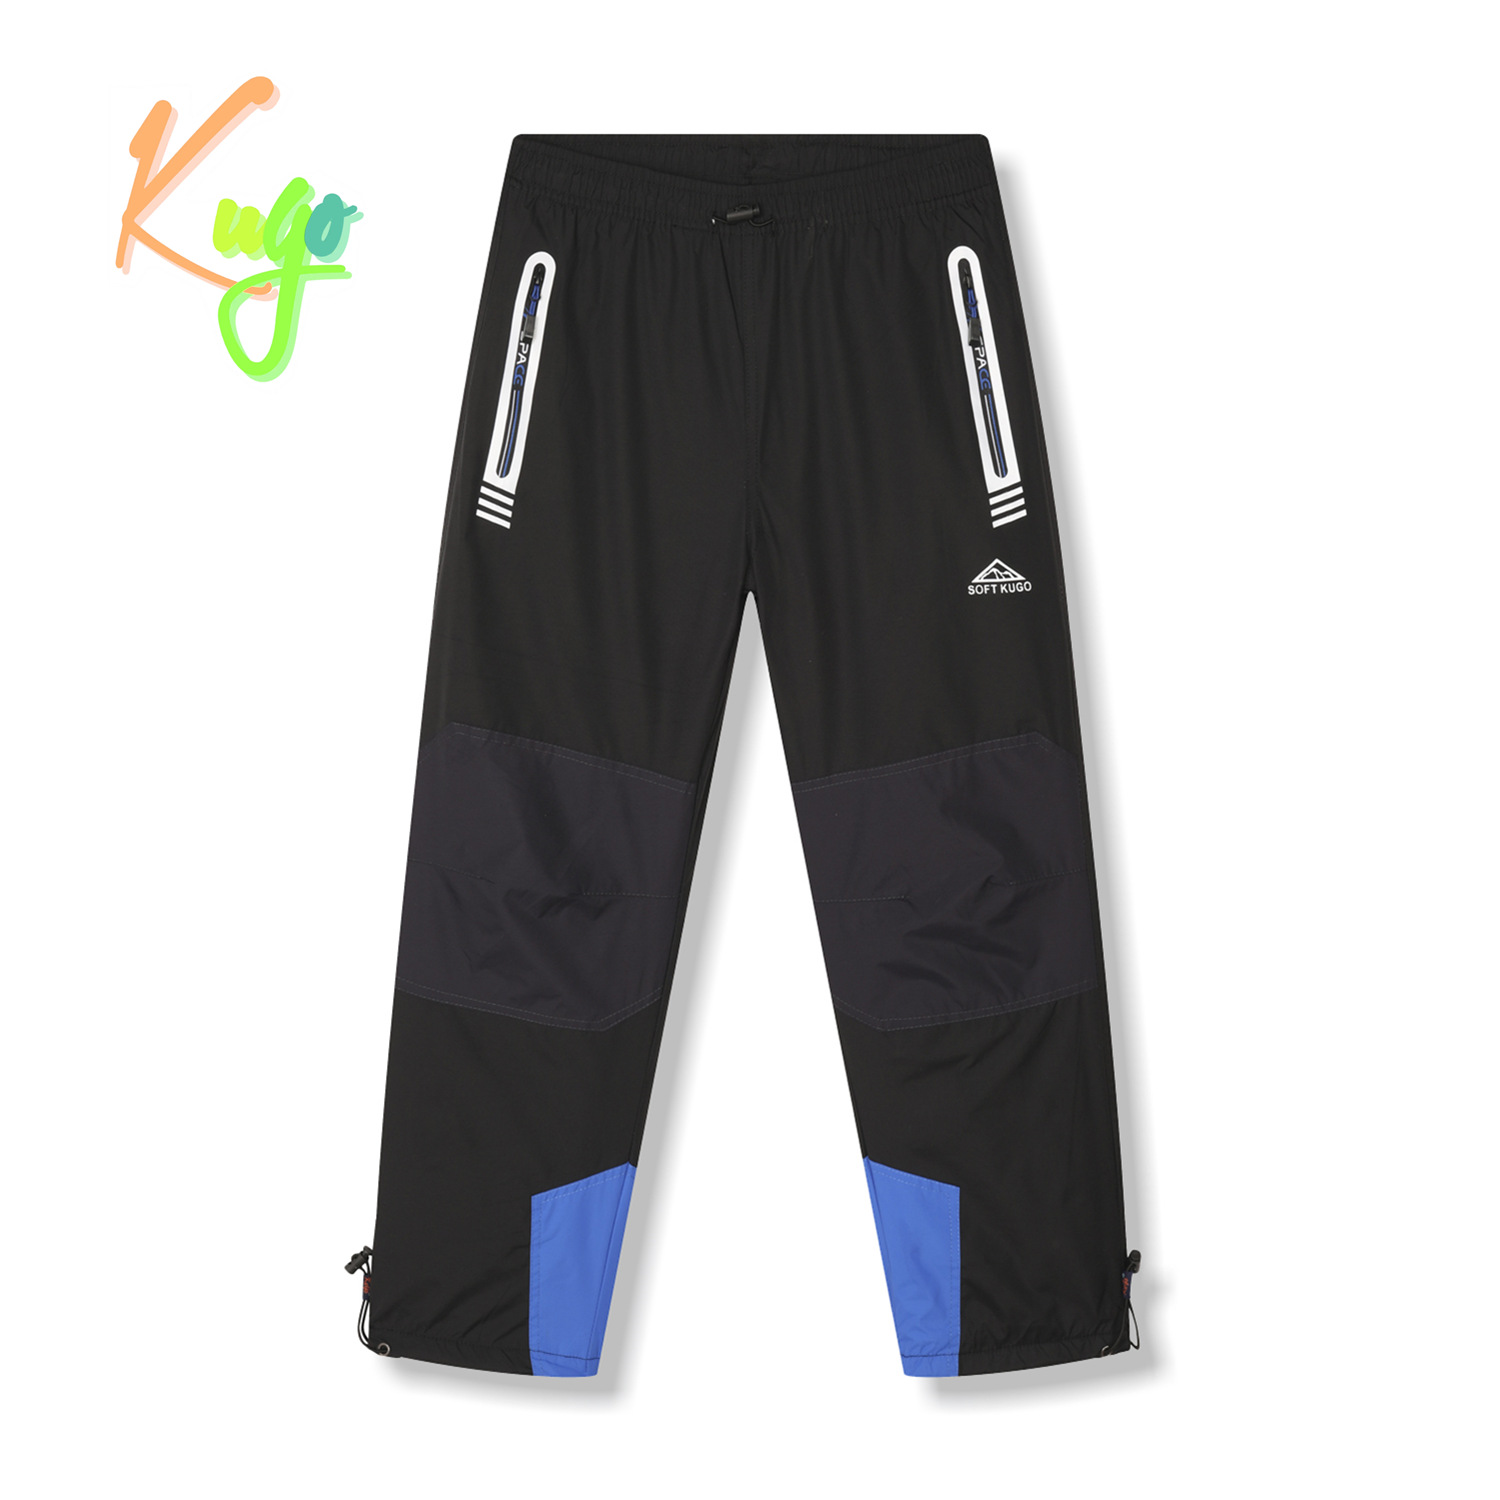 Chlapecké šusťákové kalhoty, zateplené - KUGO DK7135, černá/ modrá aplikace Barva: Černá, Velikost: 134